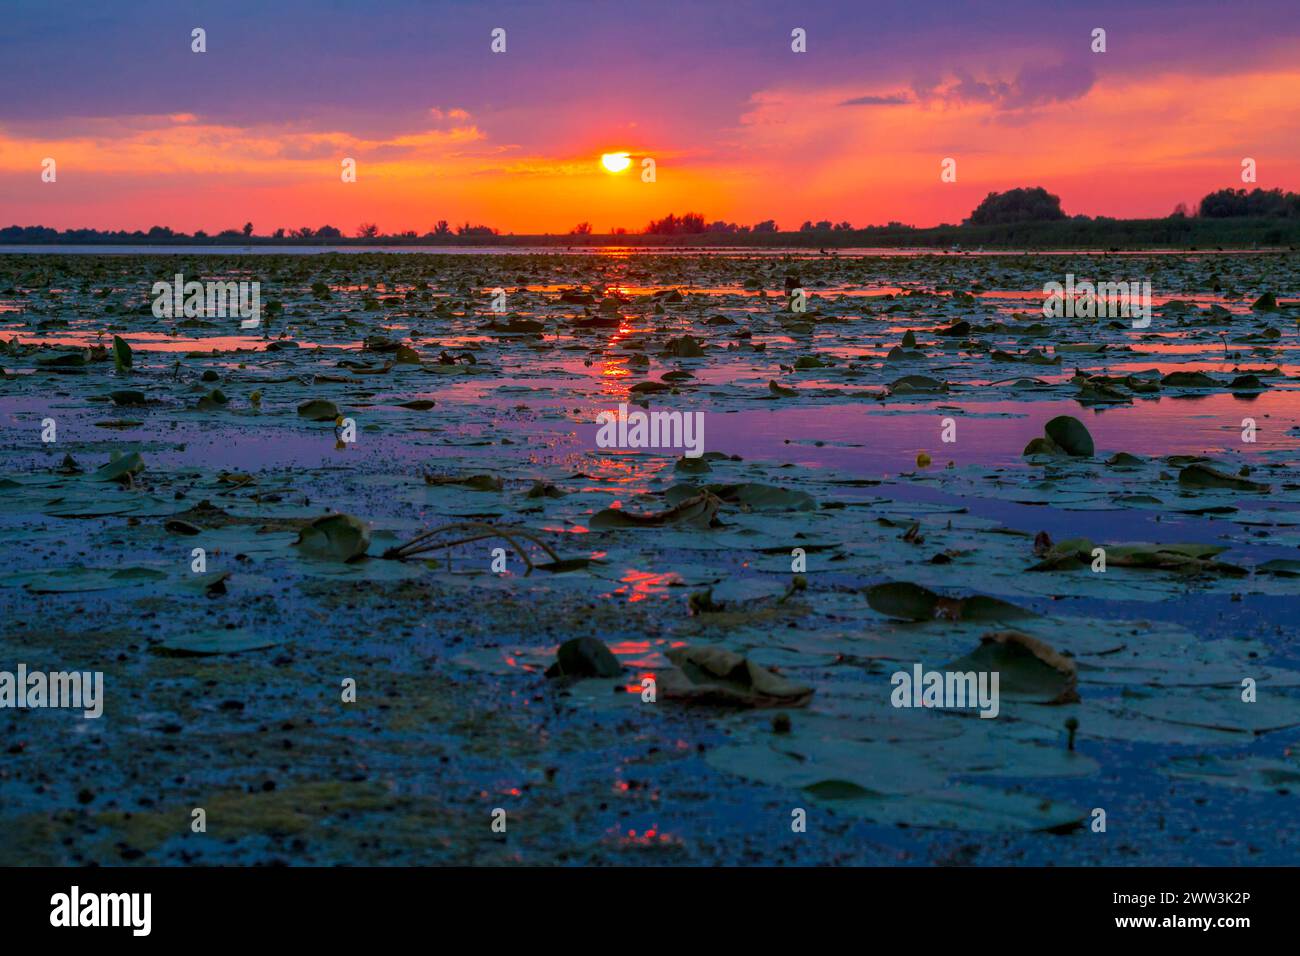 Colorato tramonto riflesso su una delle lagune del Delta del Danubio con cielo arancione e viola su lilly Pads e acqua Foto Stock